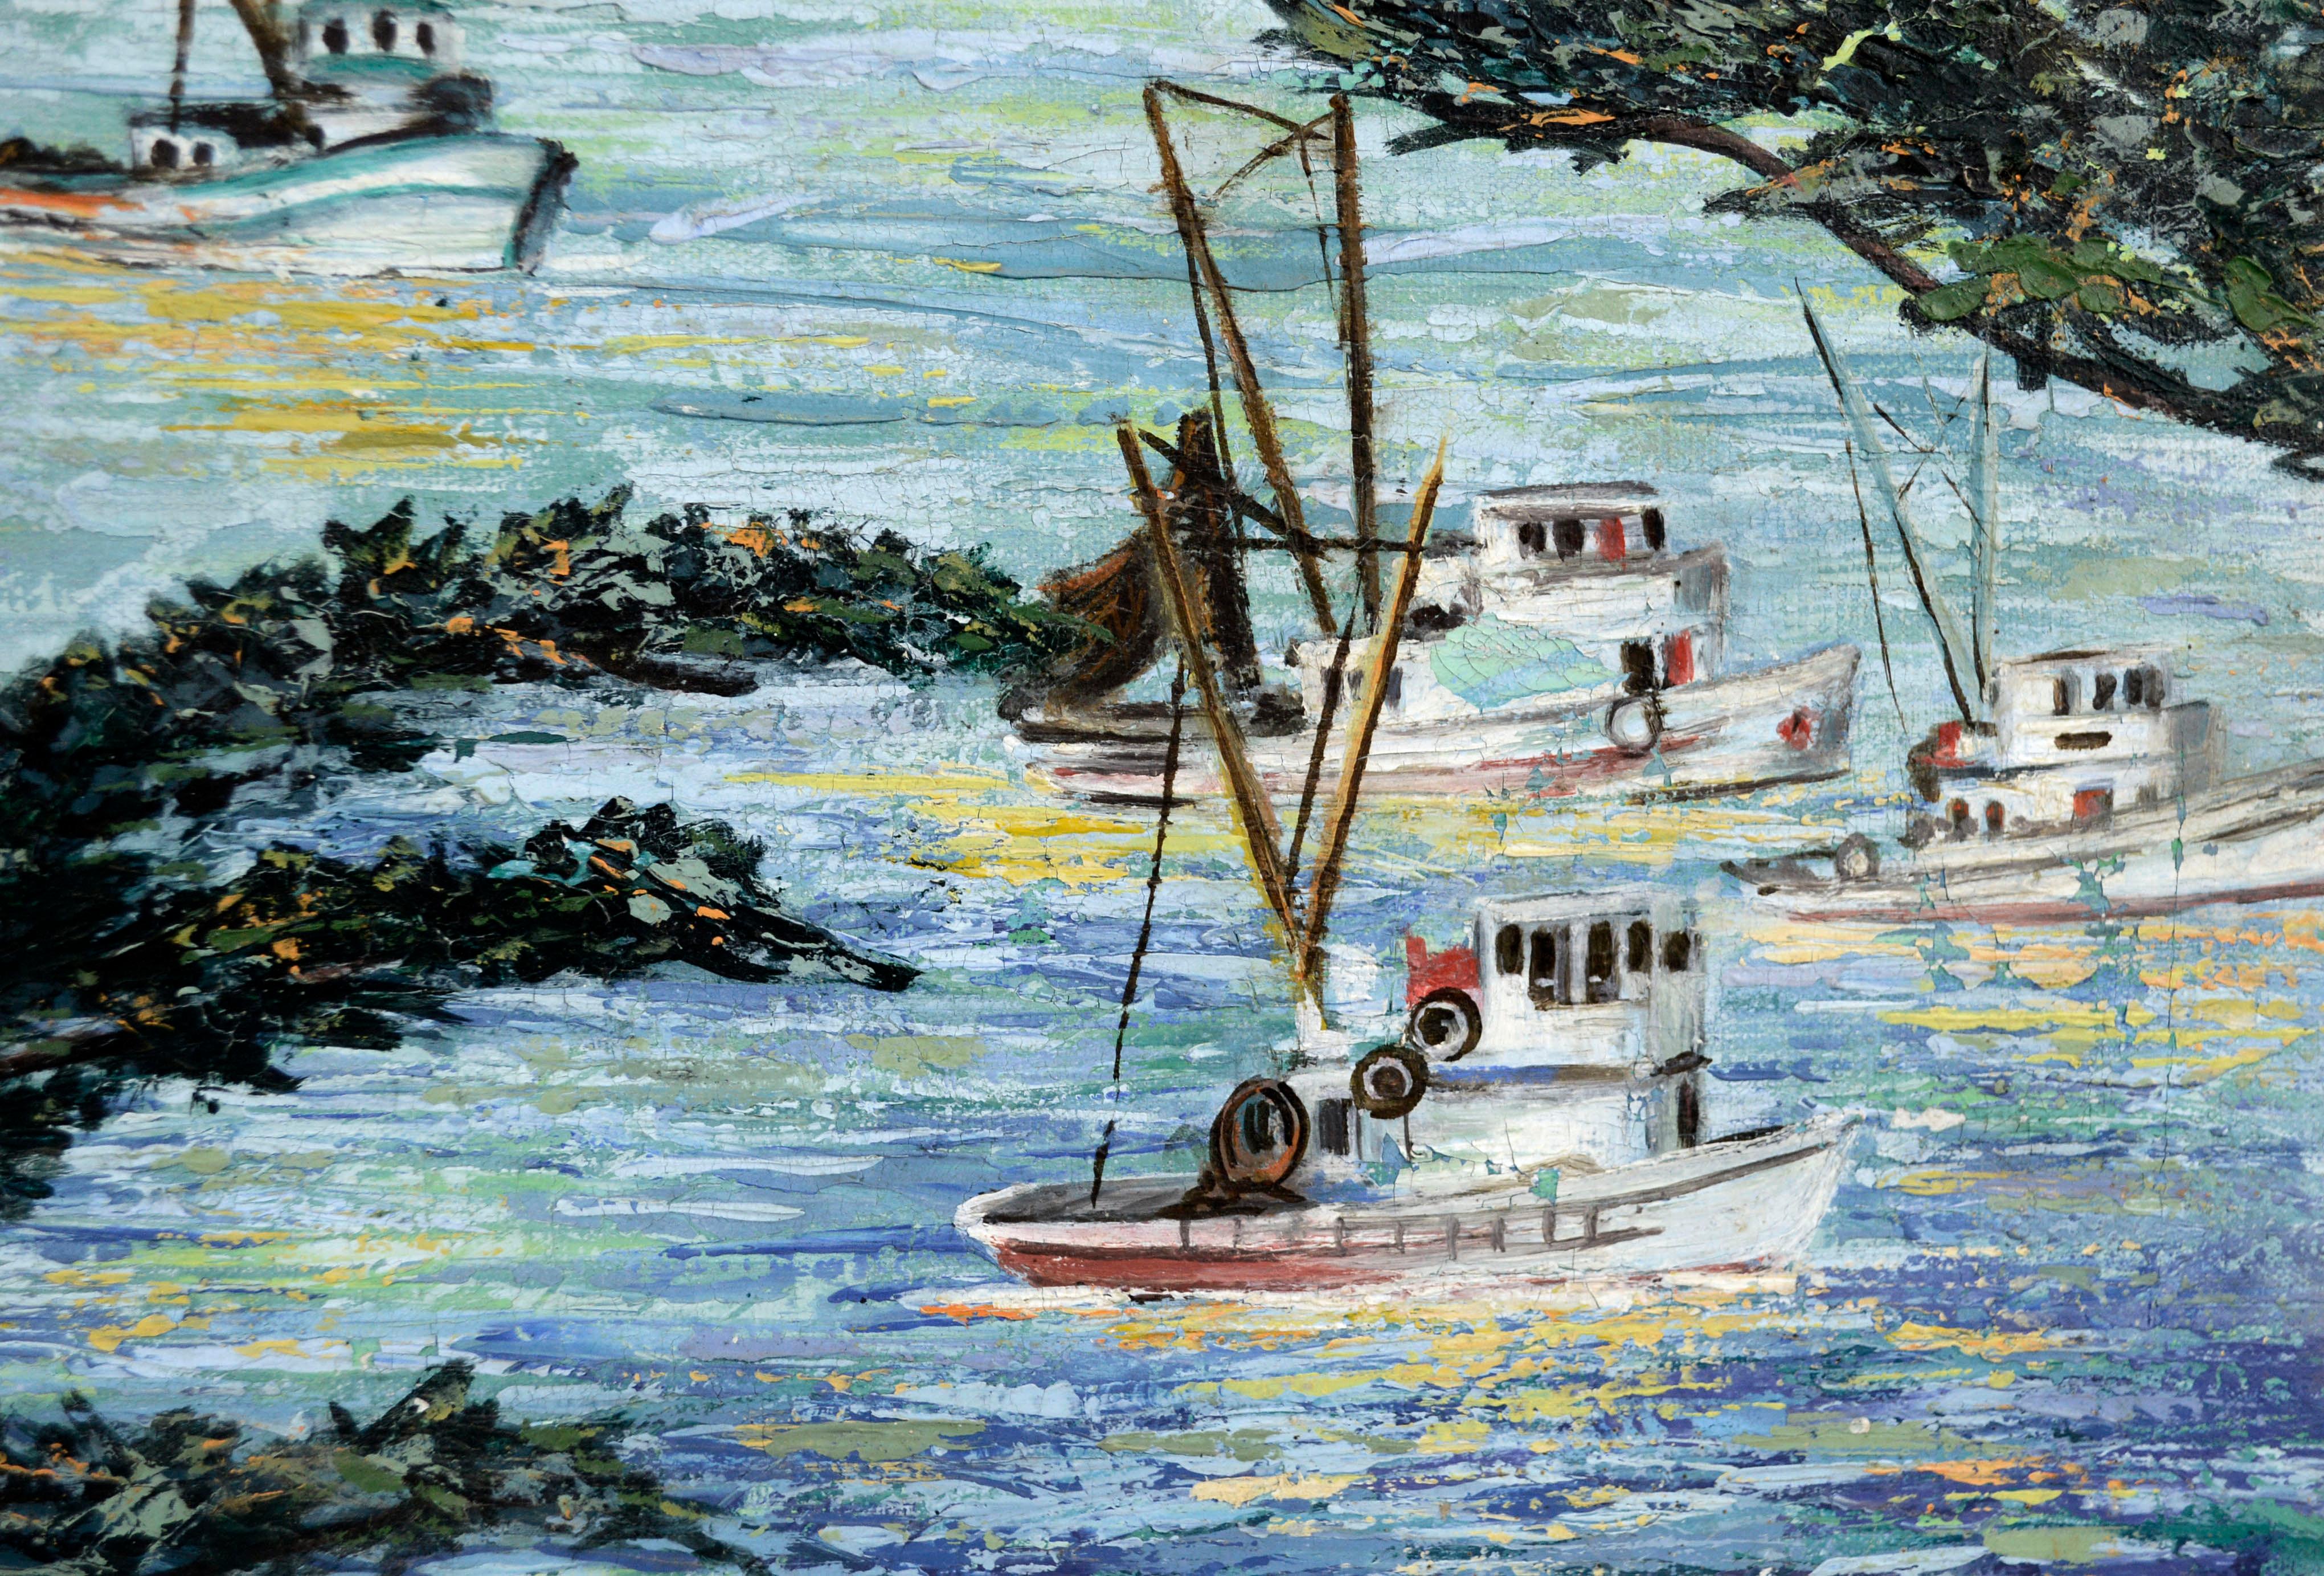 Boats At Sea, Mid Century Carmel California Coast Horizontal Seascape  - Painting by Virginia Shackles